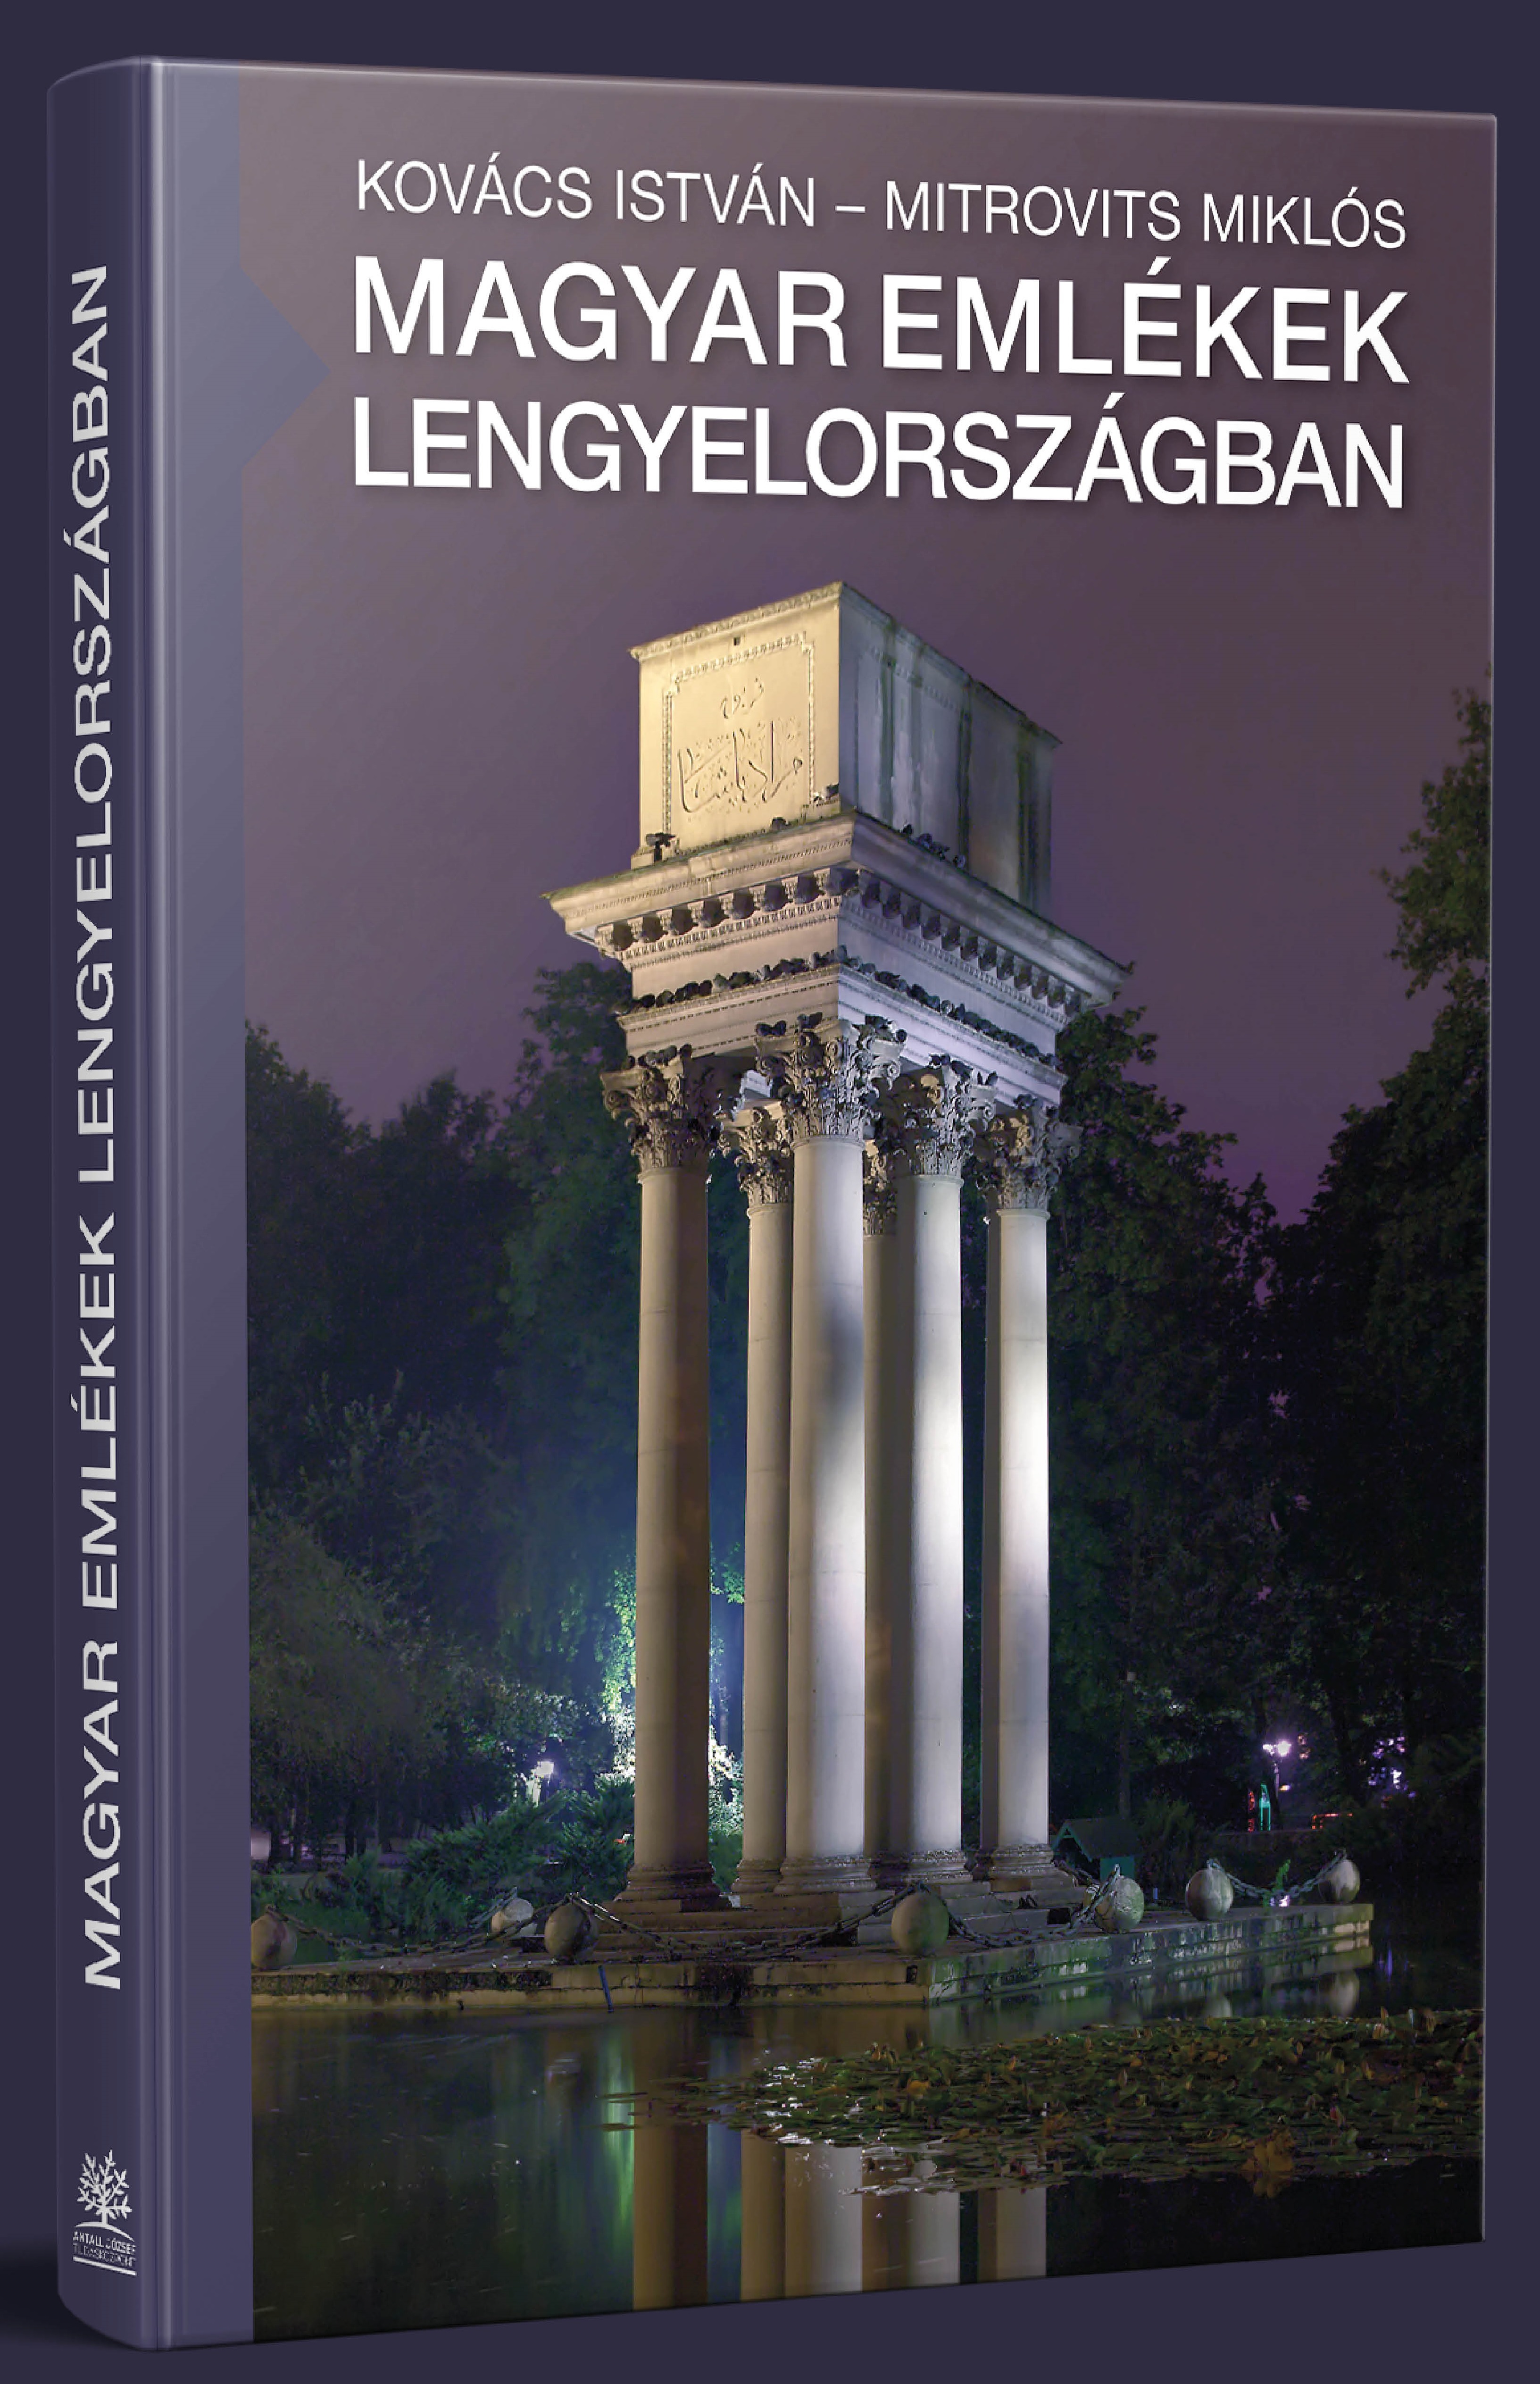 Magyar emlékek Lengyelországban – megjelent Kovács István és Mitrovits Miklós könyve